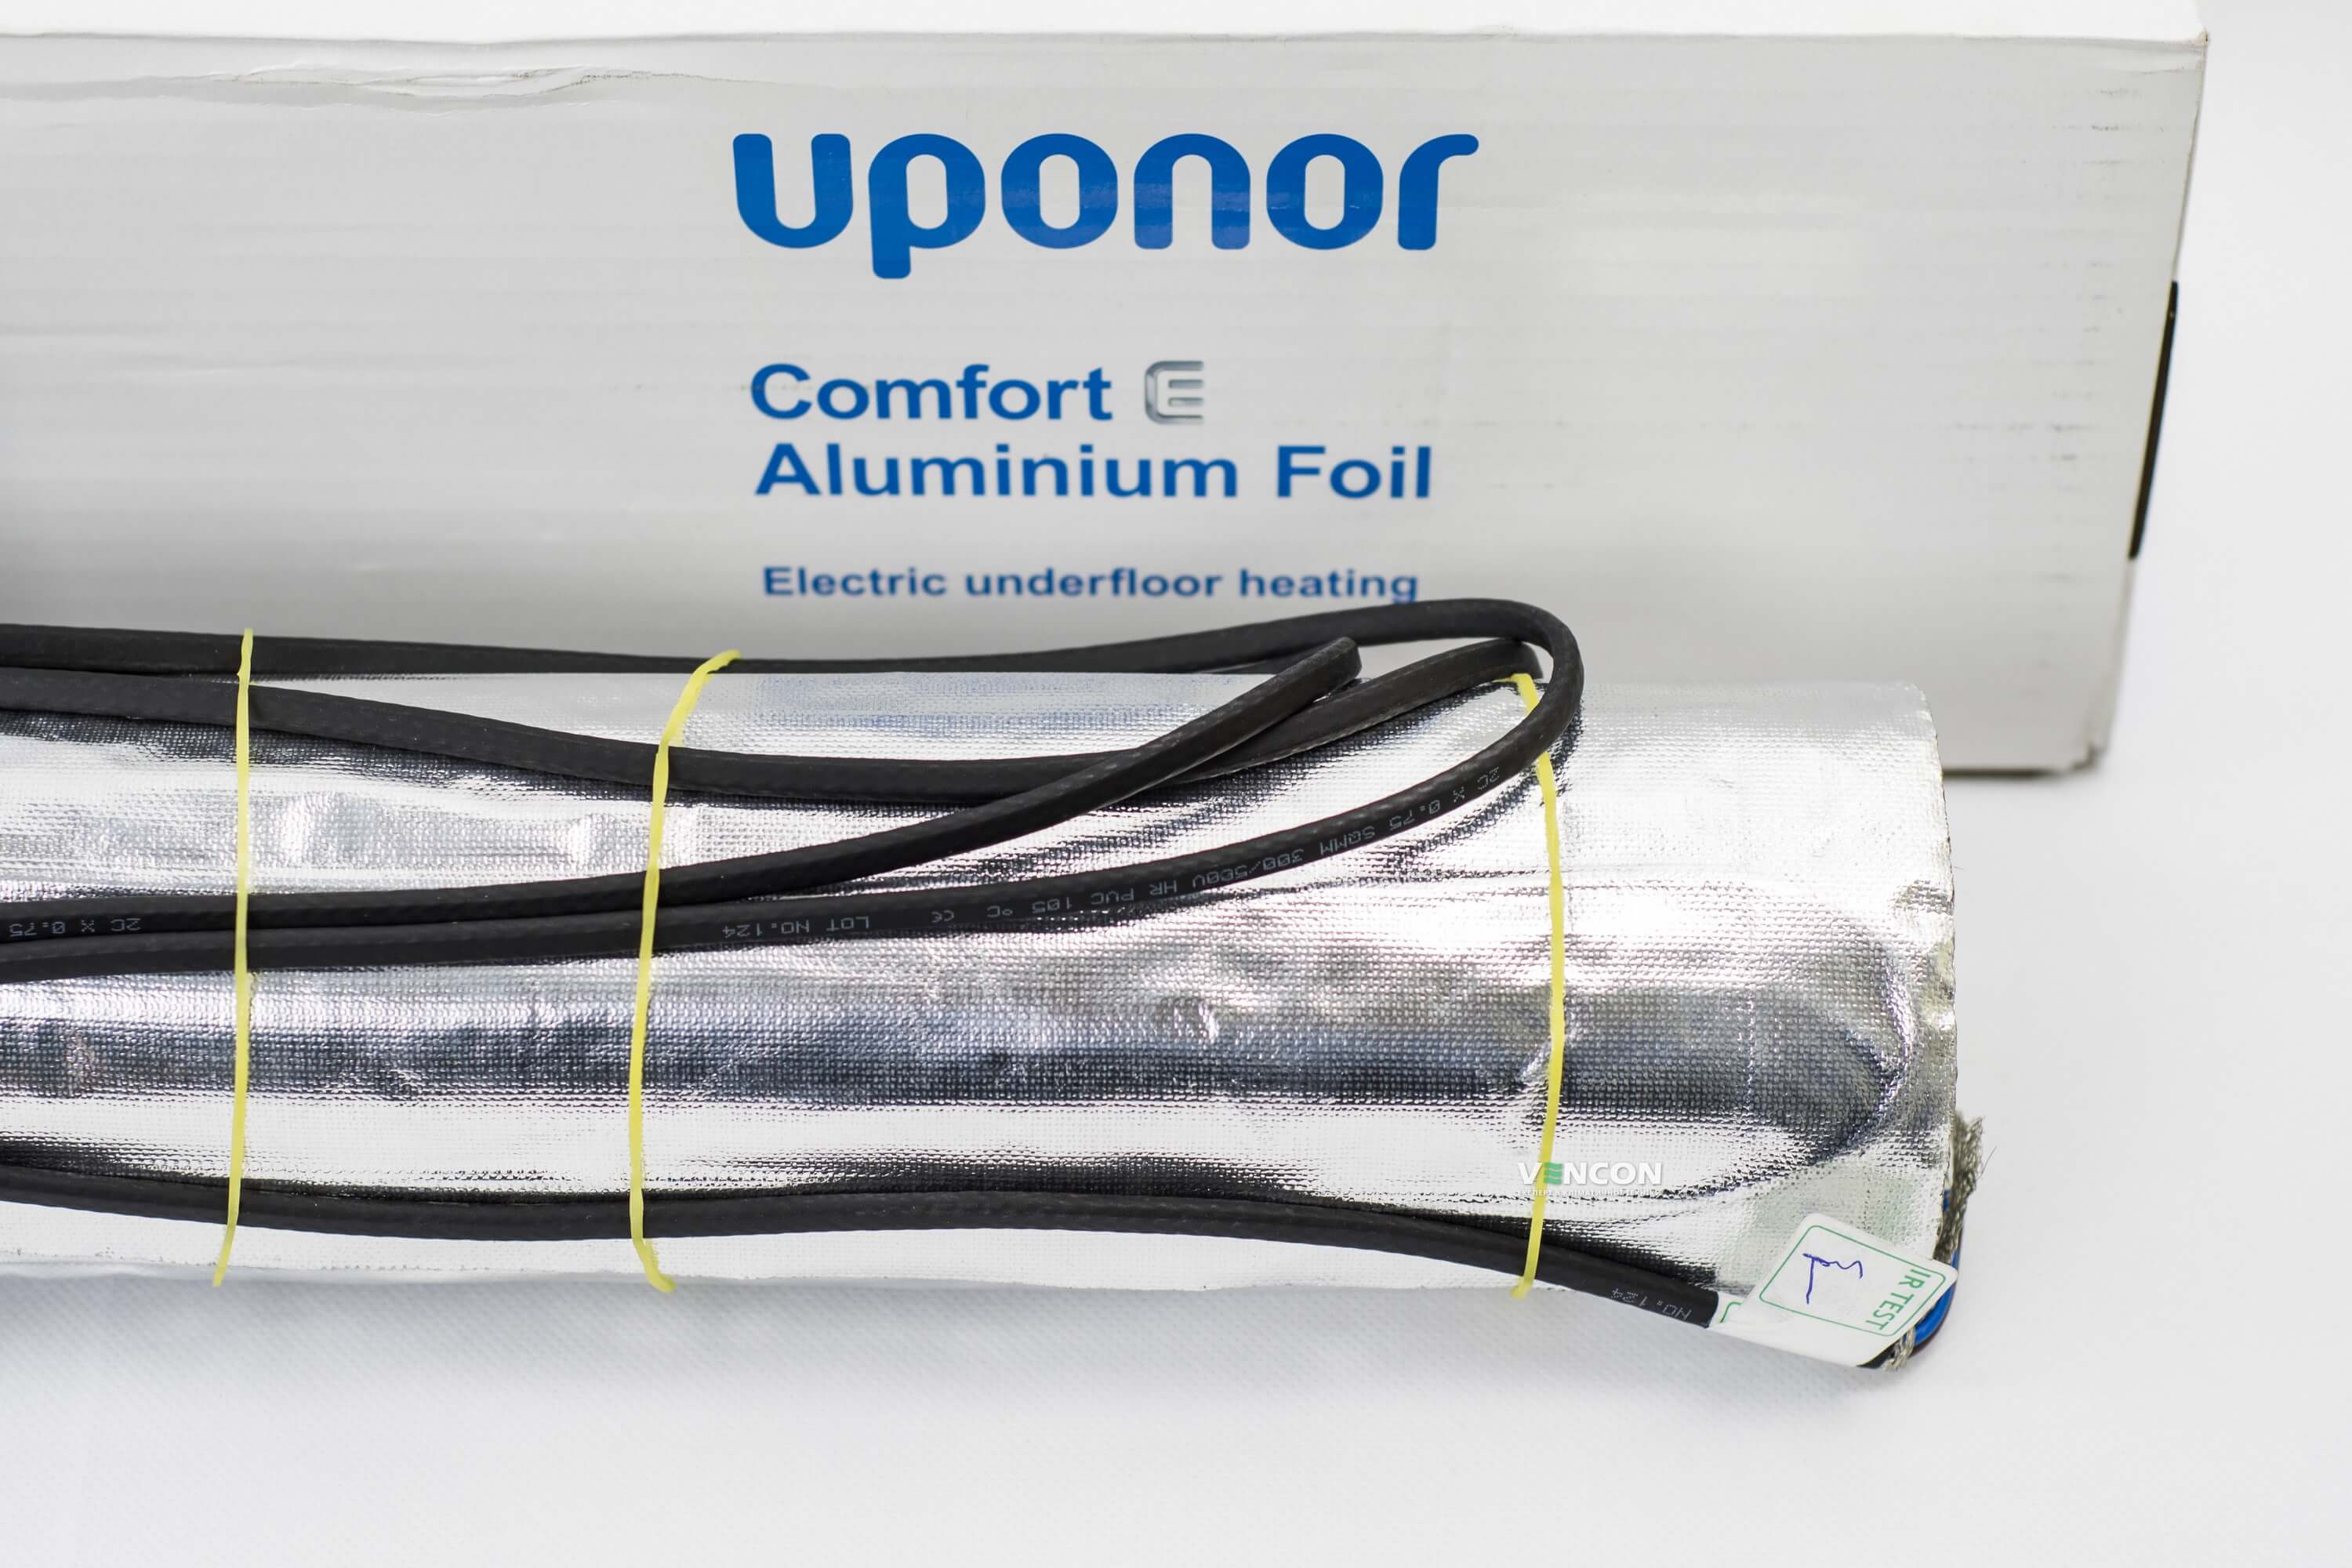 Электрический теплый пол Uponor Aluminium Foil 140-3 отзывы - изображения 5